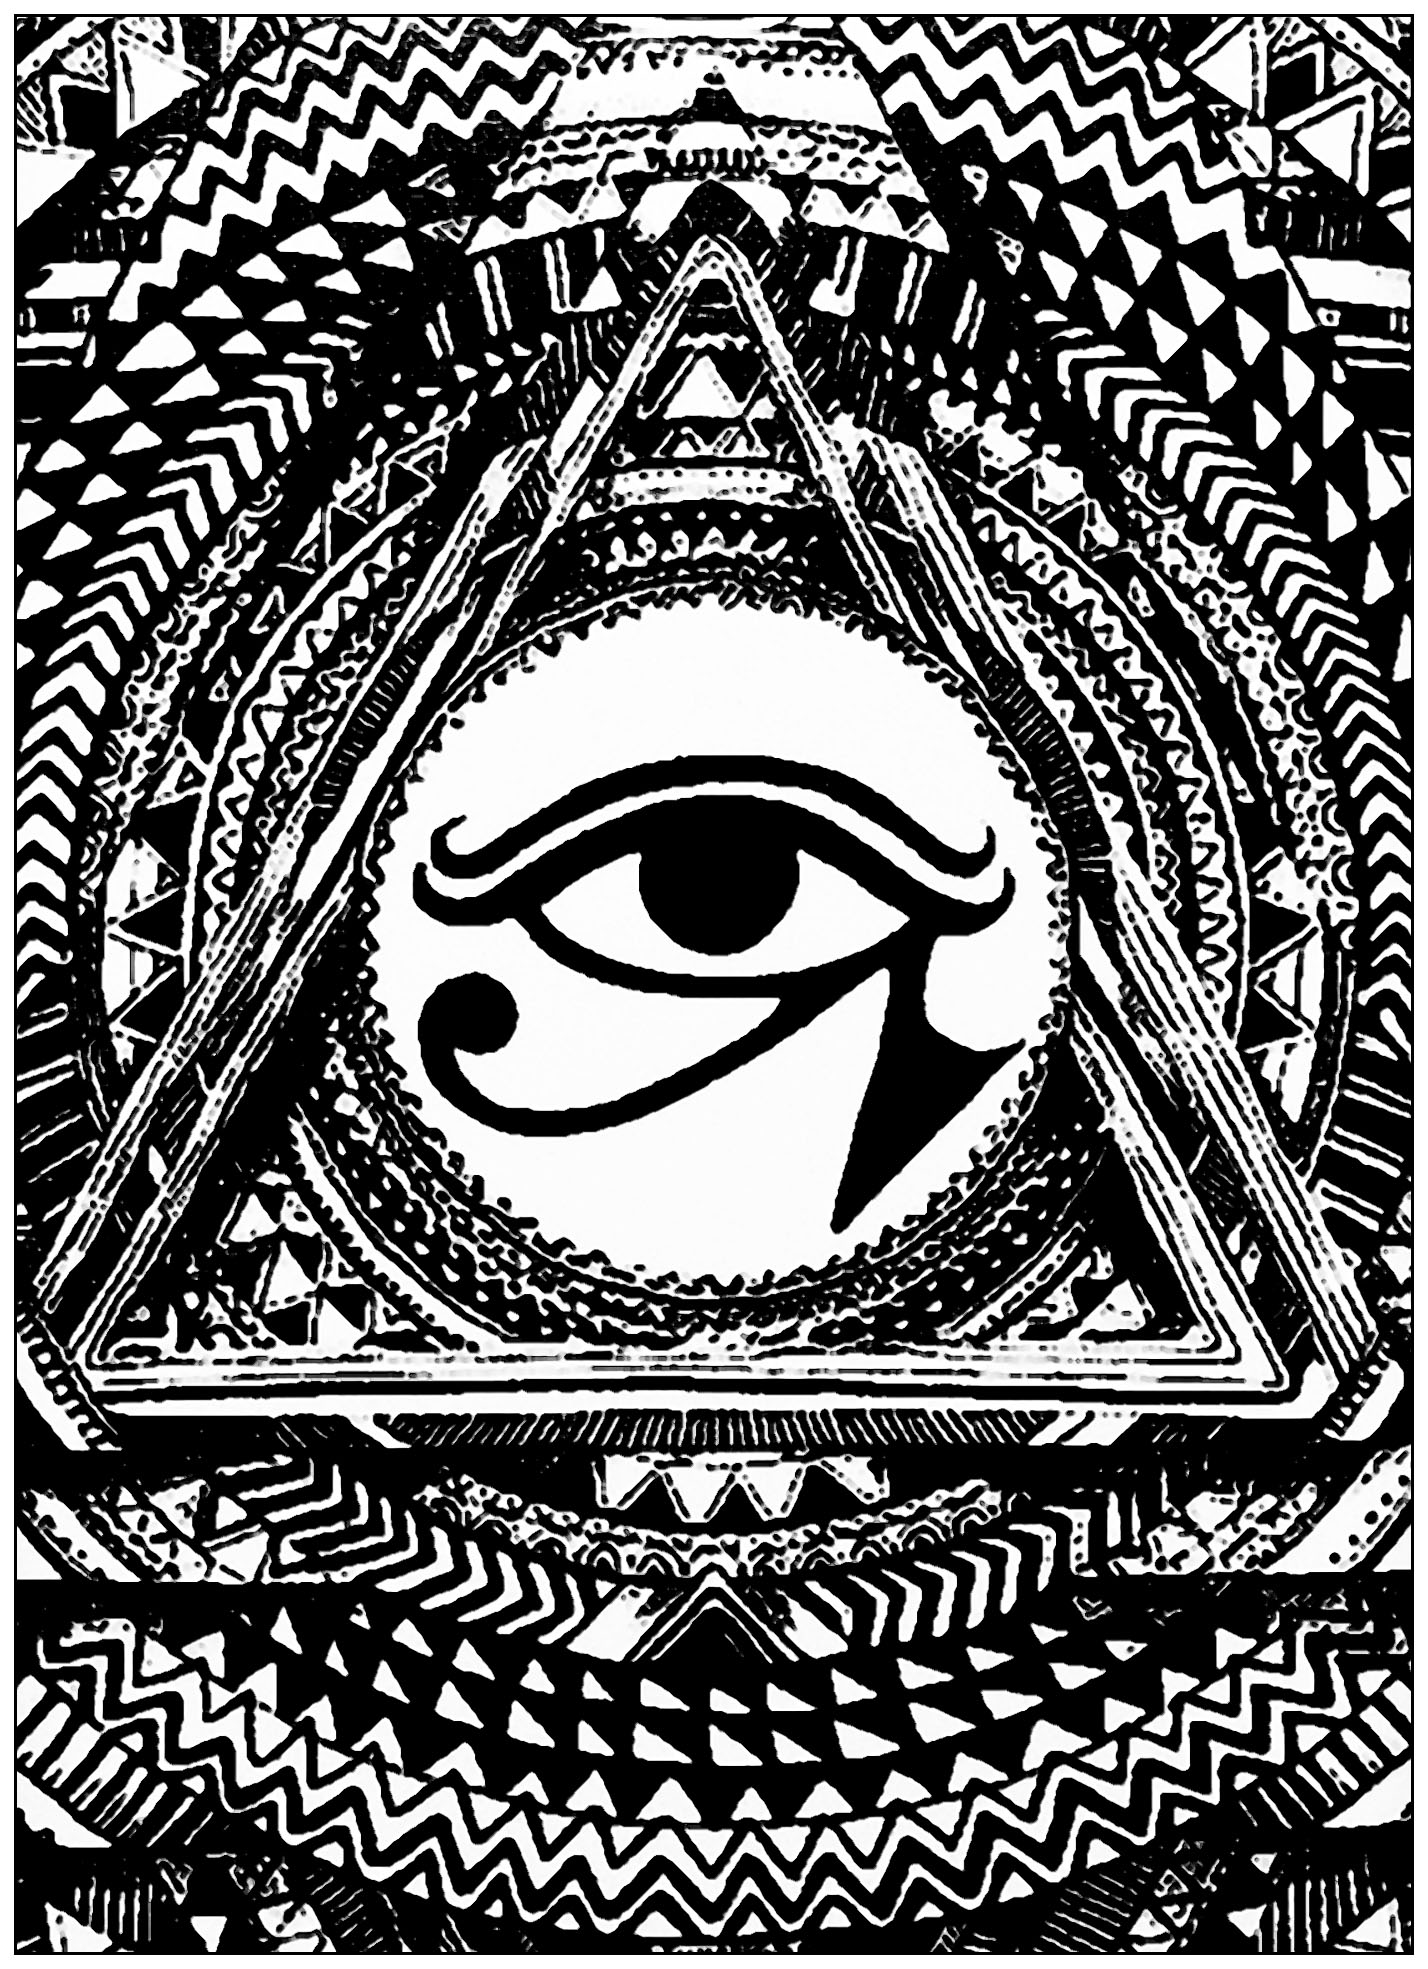 Occhio di Horus in un triangolo. L'Occhio di Horus era usato come segno di prosperità e protezione, derivato dal mito di Iside e Osiride. Questo simbolo presenta una sorprendente connessione tra struttura e funzione neuroanatomica.